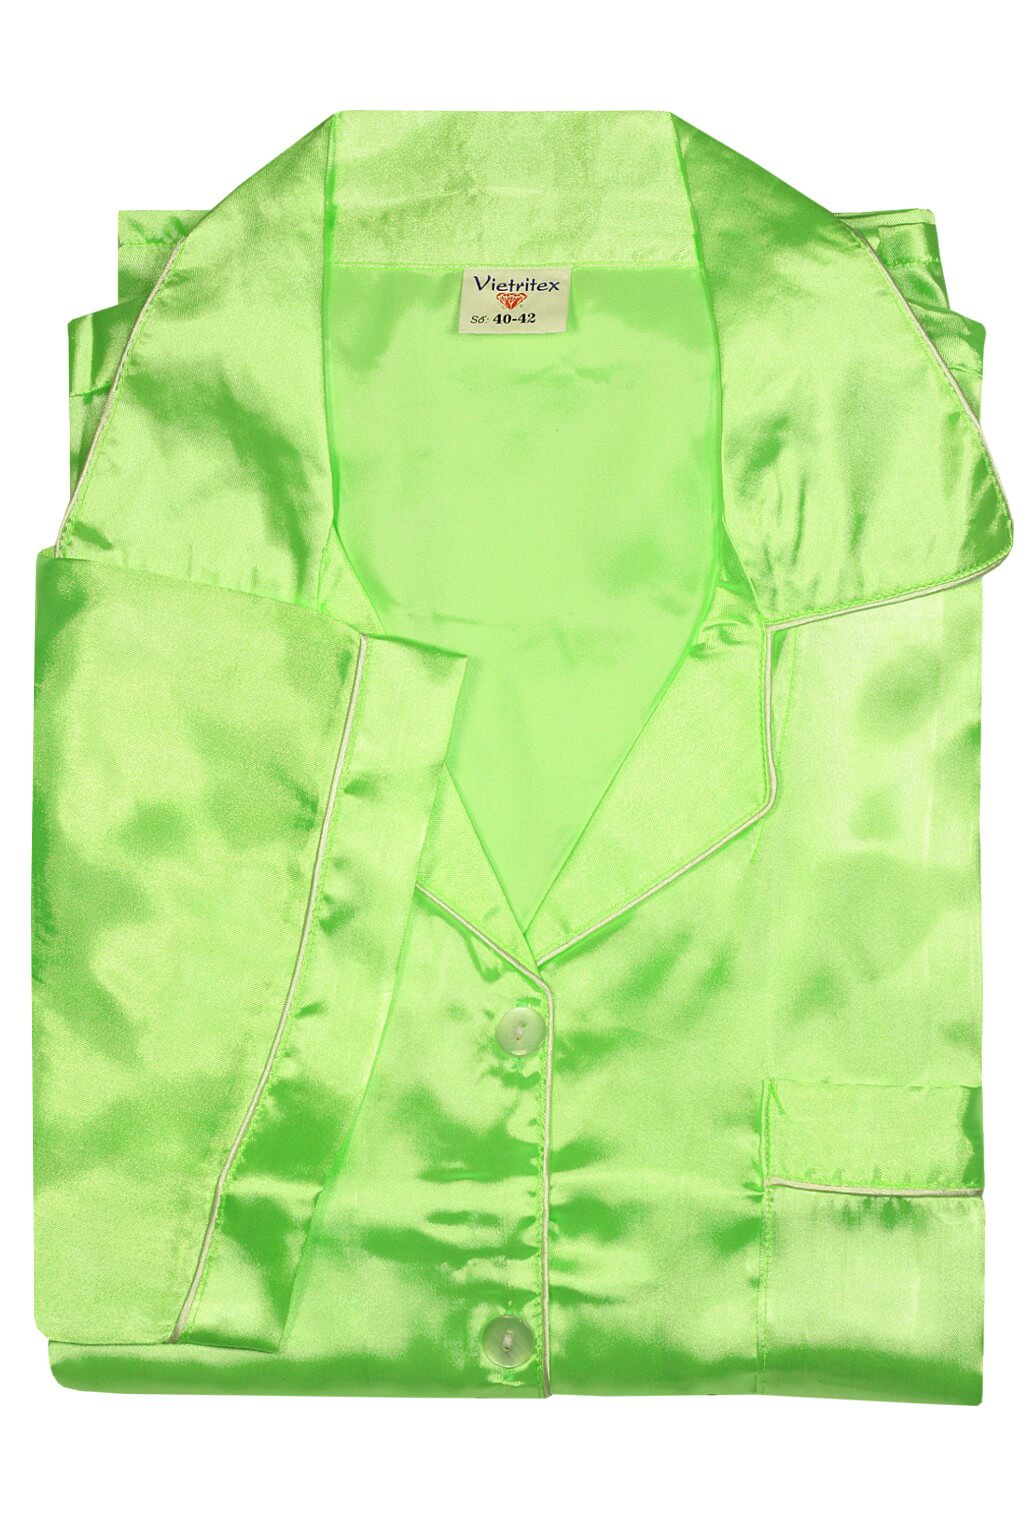 Kalipo Maxi saténové pyžamo XL zářivě zelená